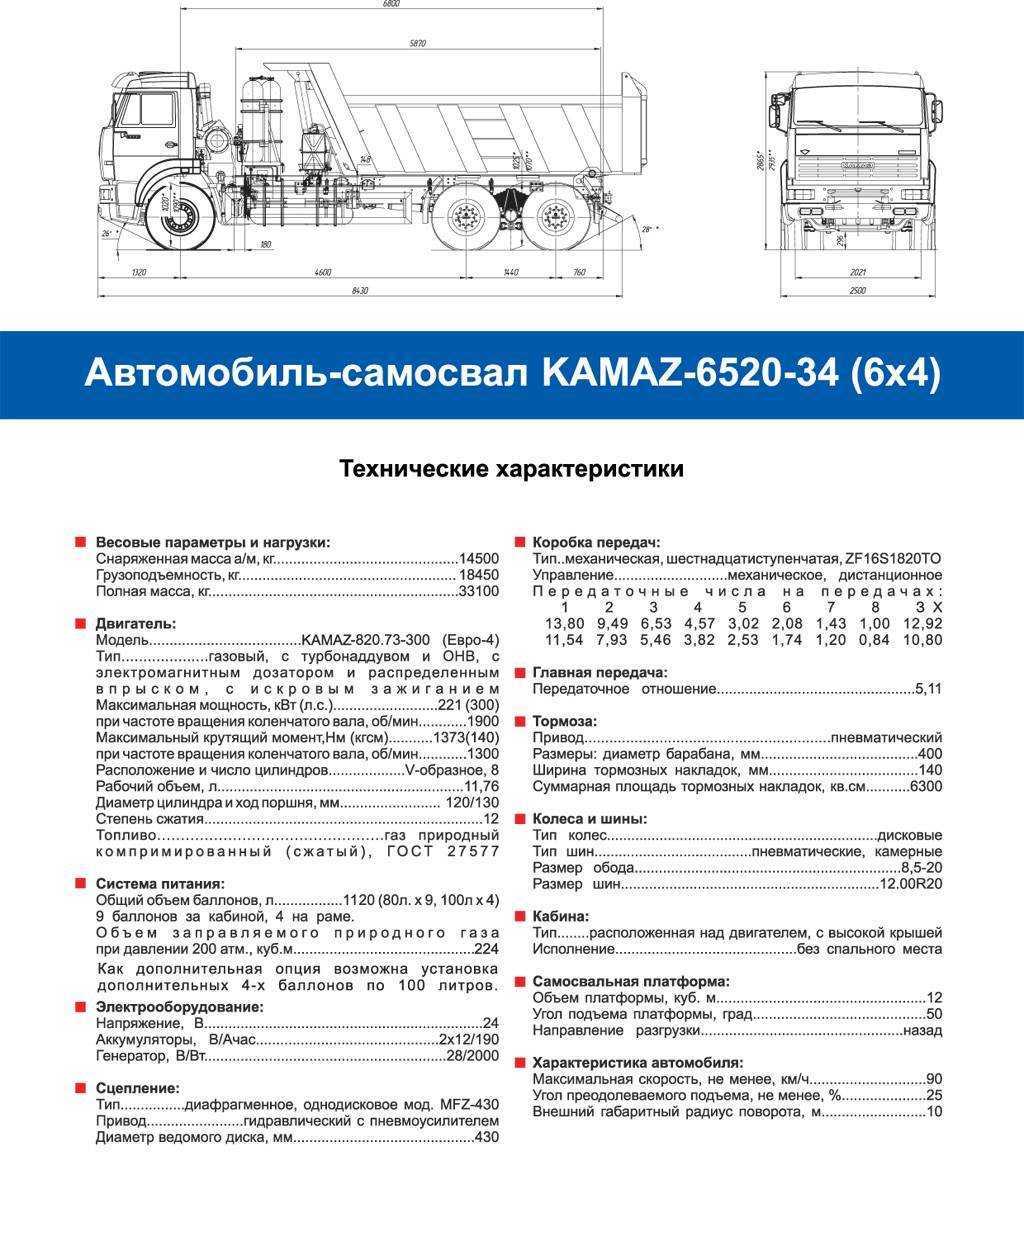 Камаз-65225: технические характеристики, особенности и отзывы